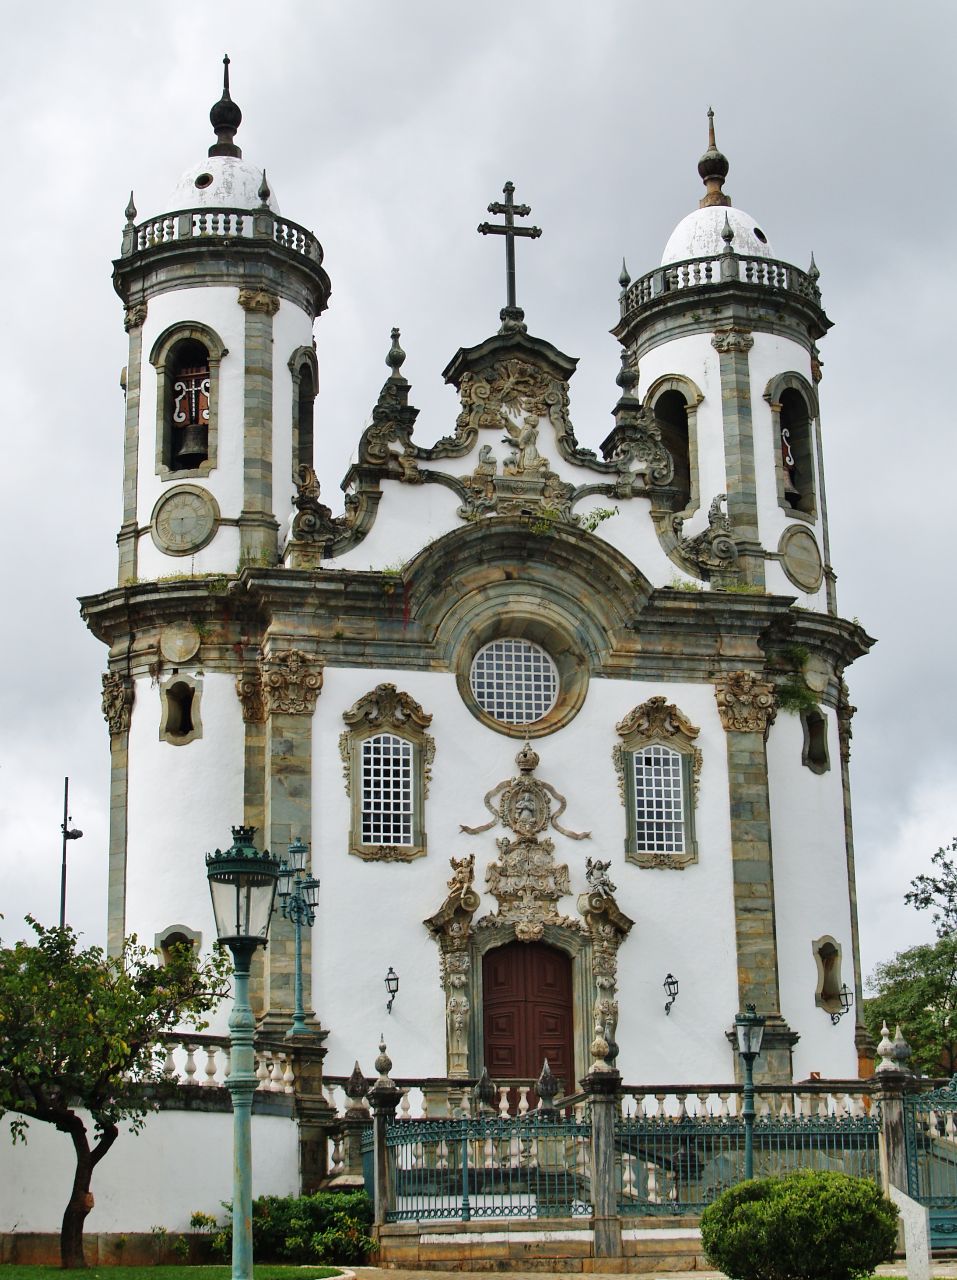 Ценнейший архитектурный памятник Сан-Жуан-дель-Рей